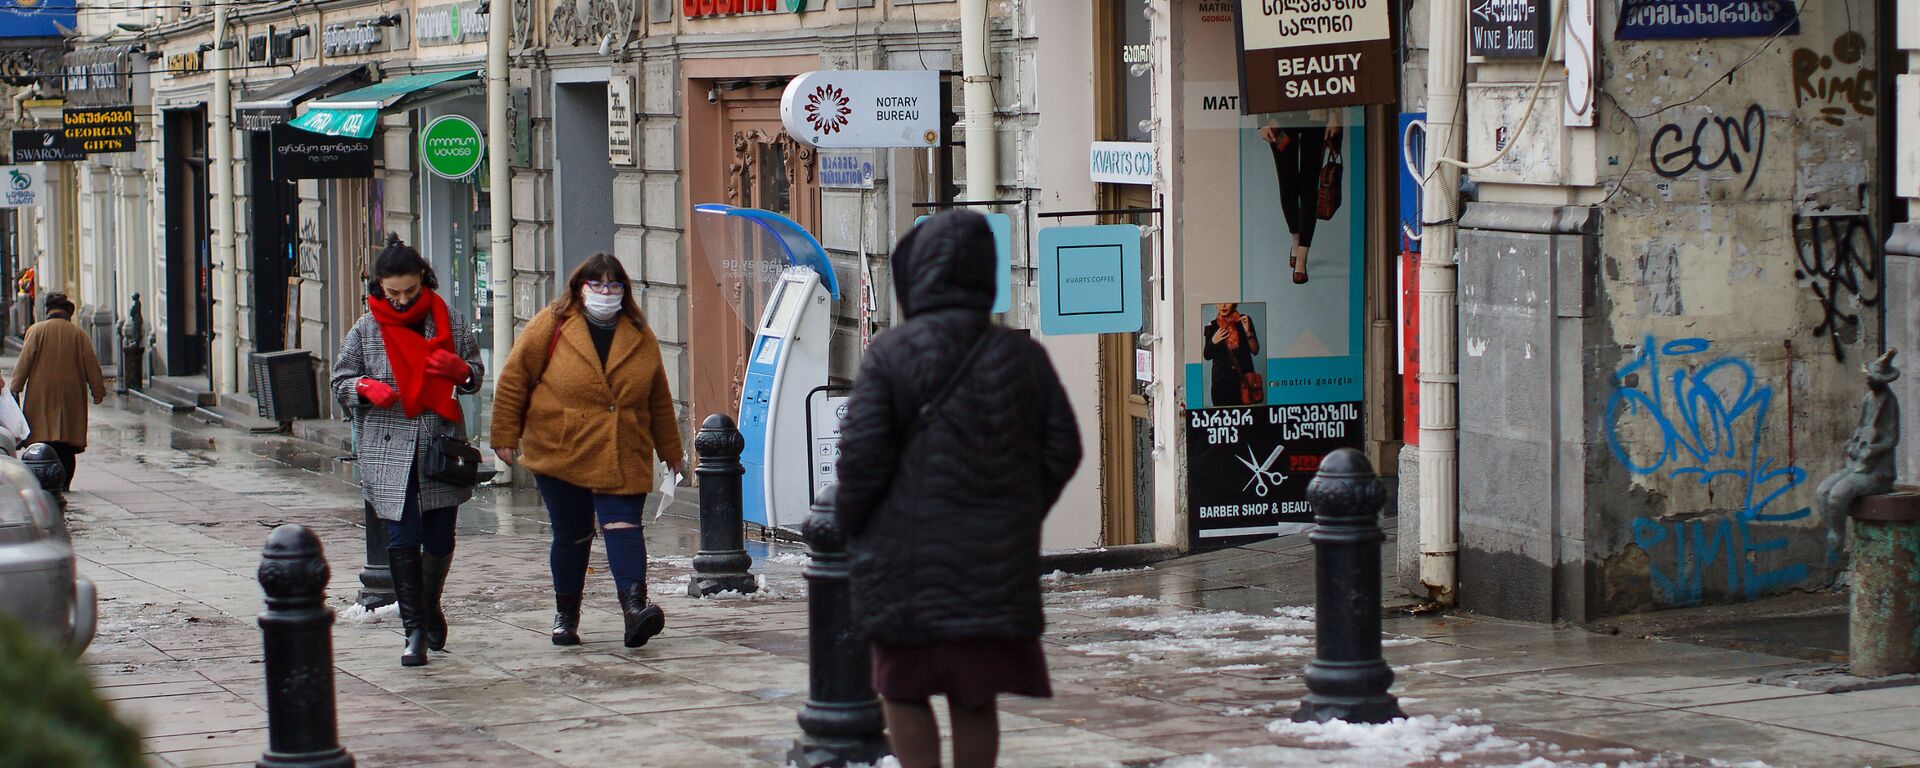 Прохожие на проспекте Руставели в Тбилиси в масках в период эпидемии коронавируса - Sputnik Грузия, 1920, 22.02.2021